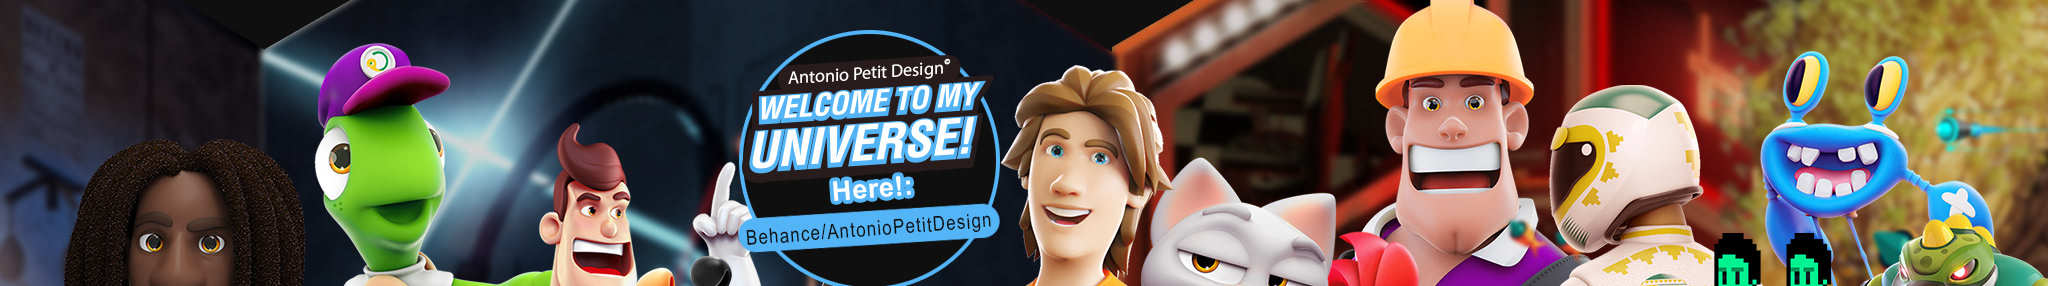 Antonio Petit Design ™'s profile banner